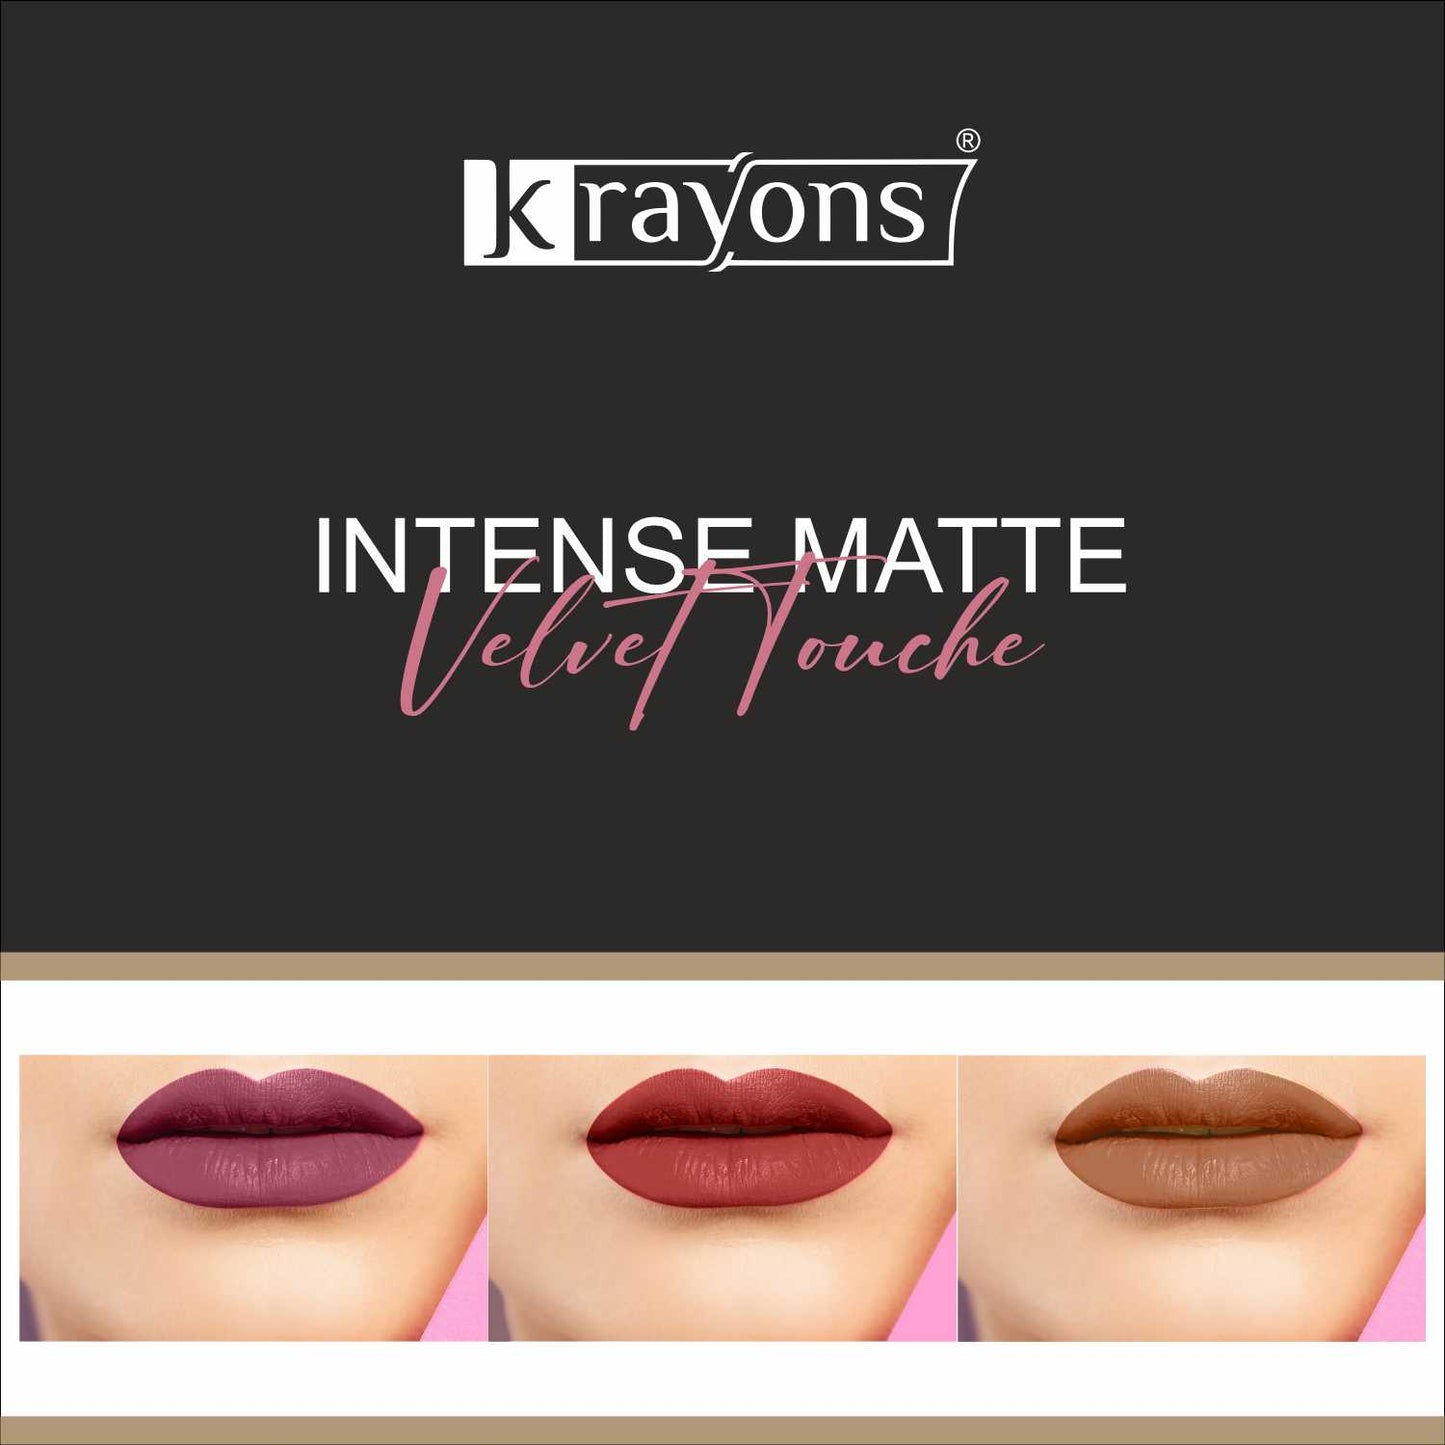 Krayons Intense Matte Lipstick, Waterproof, Longlasting, Rose Red, Scarlet Red, Nude Beige, 3.5gm Each (Pack of 3)